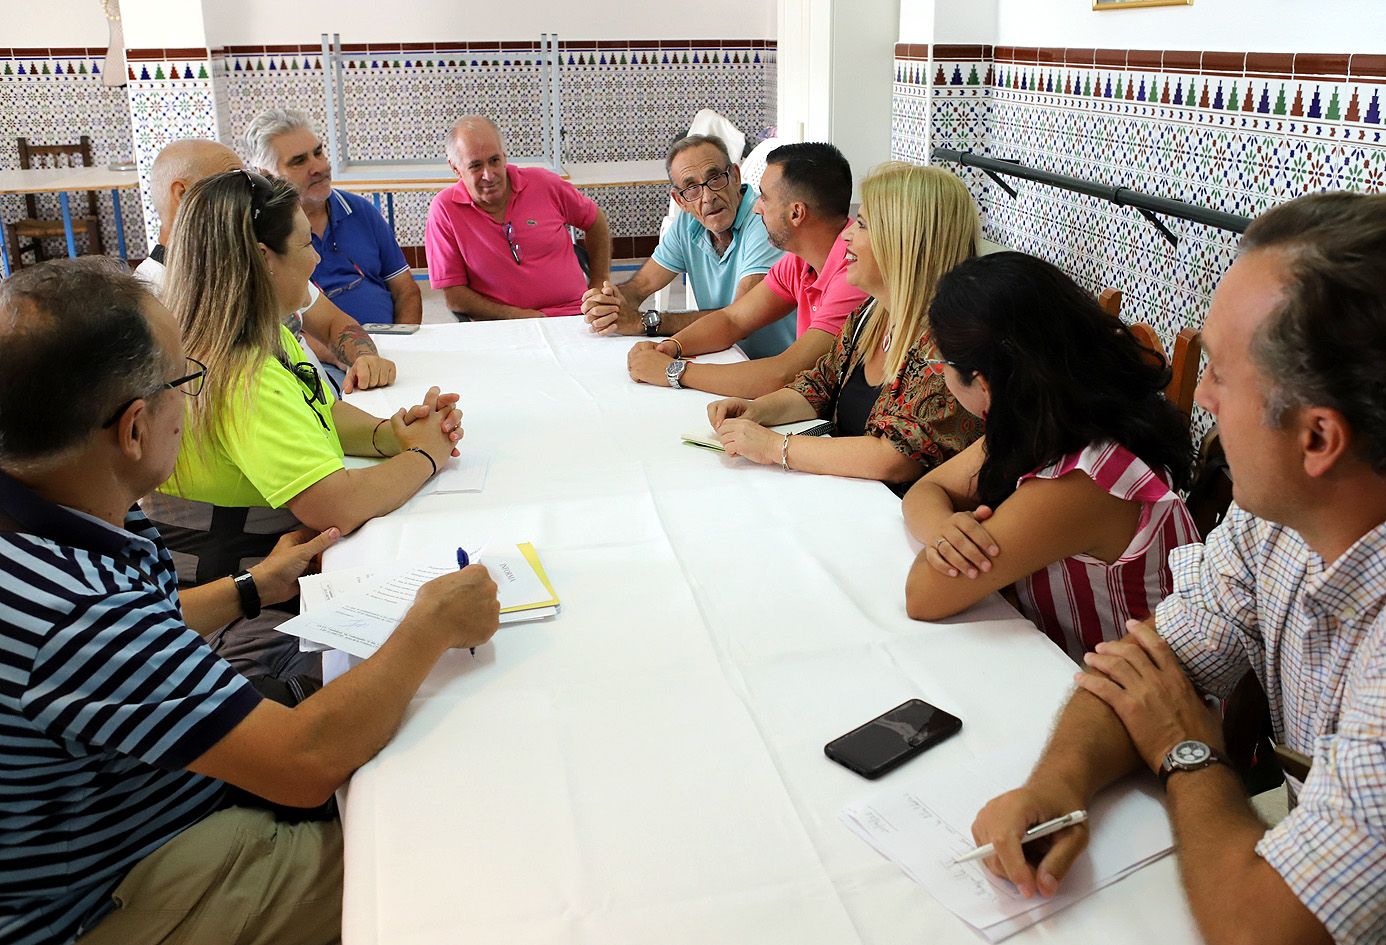 La alcaldesa se reúne con la junta directiva de la asociación de vecinos de la barriada de Jerez Vallesequillo II para estudiar sus reivindicaciones.